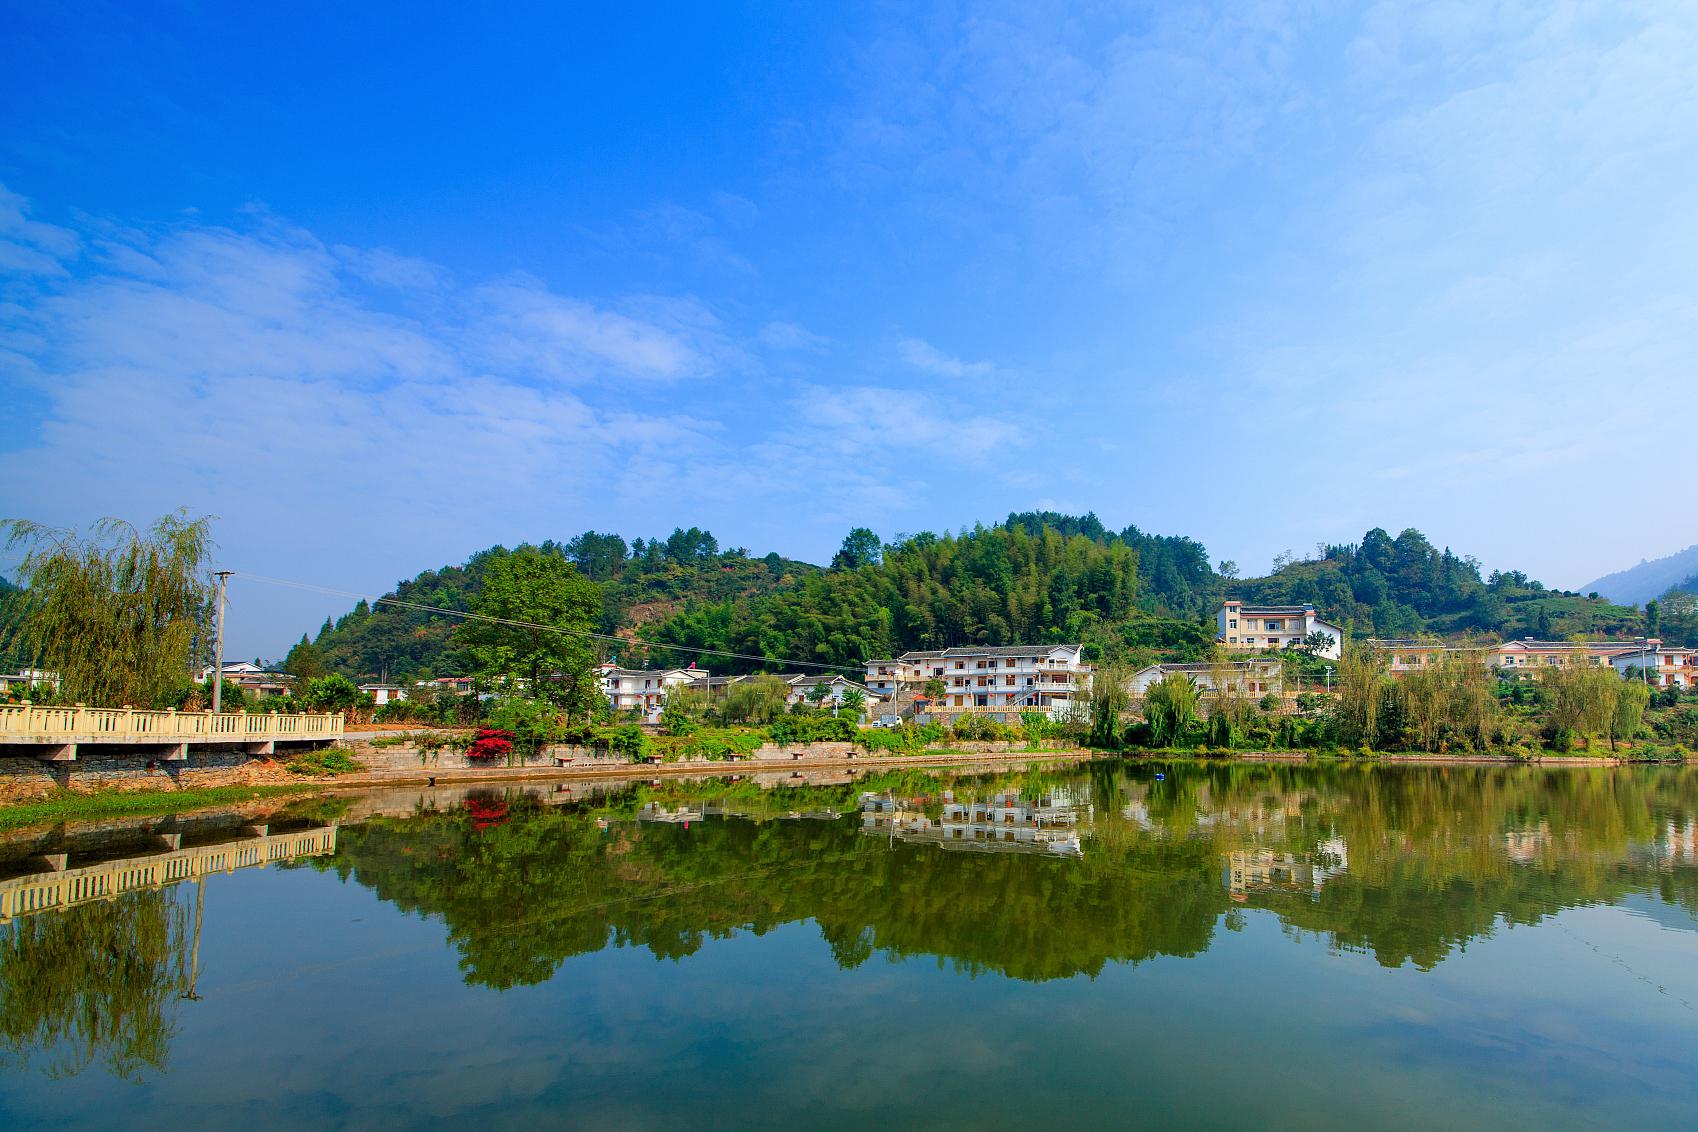 咸宁旅游景点推荐 咸宁旅游资源丰富,拥有得天独厚的自然景观和人文